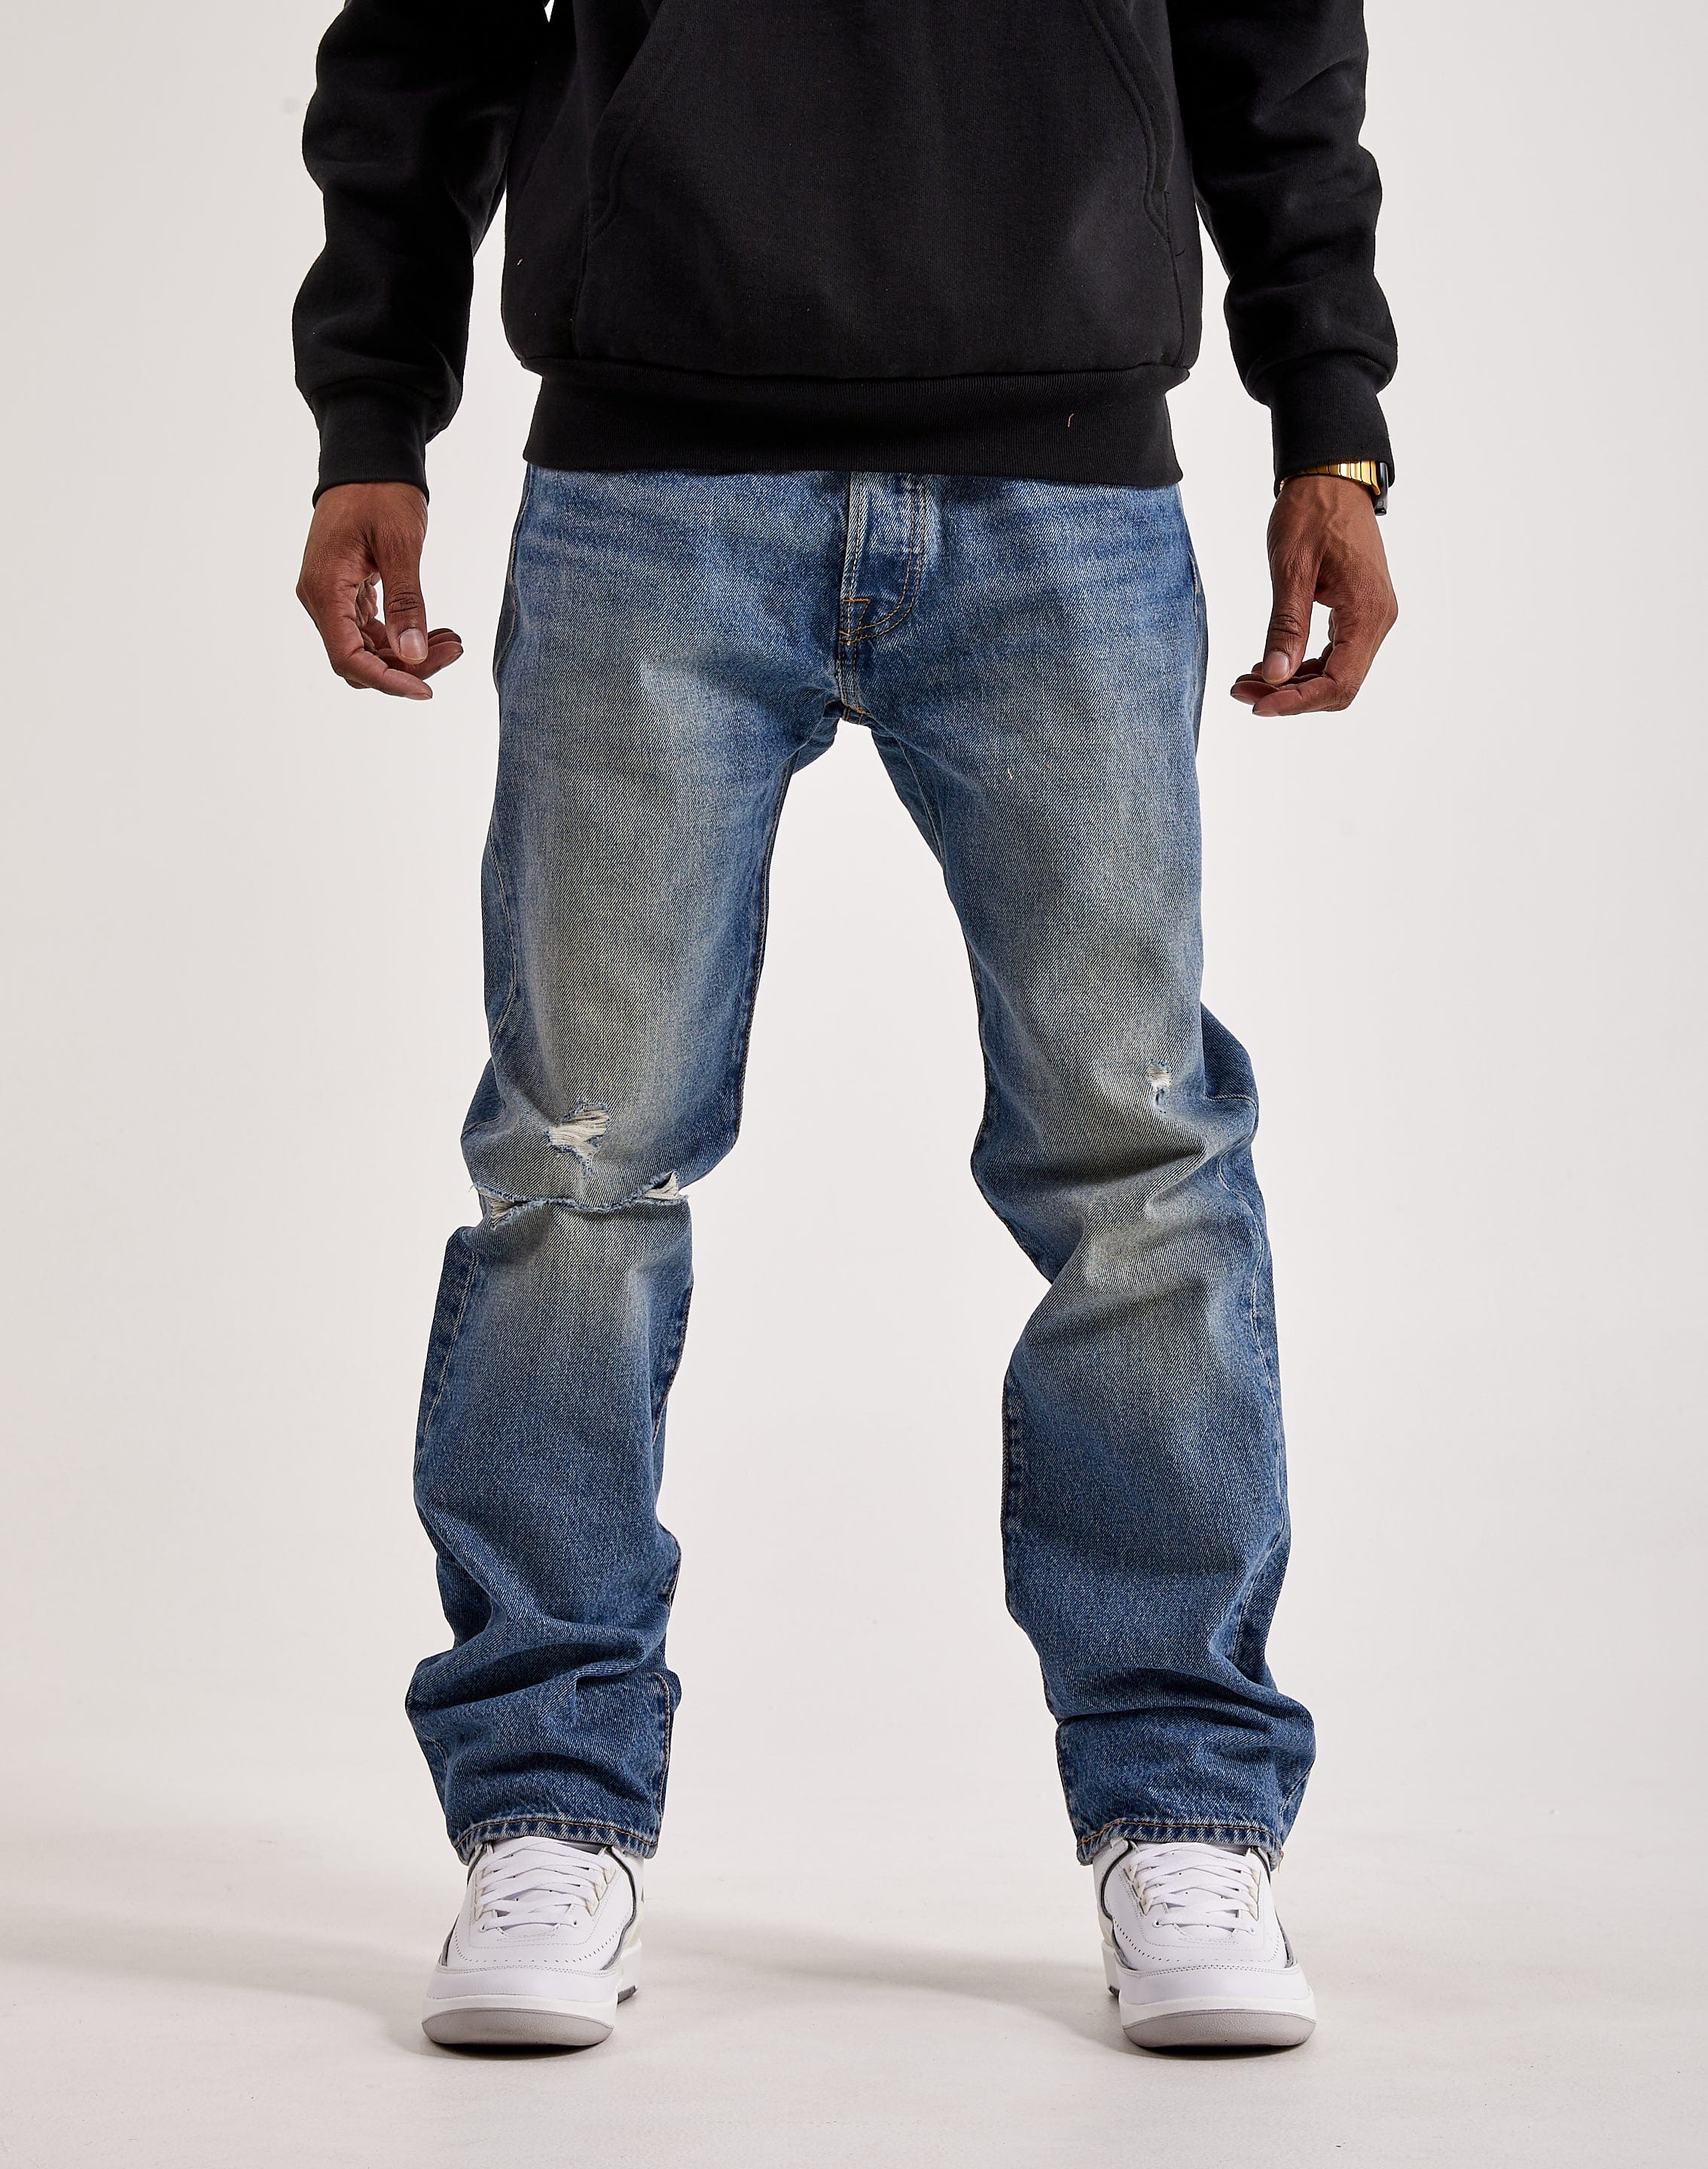 Levi 501 Original Fit Jeans